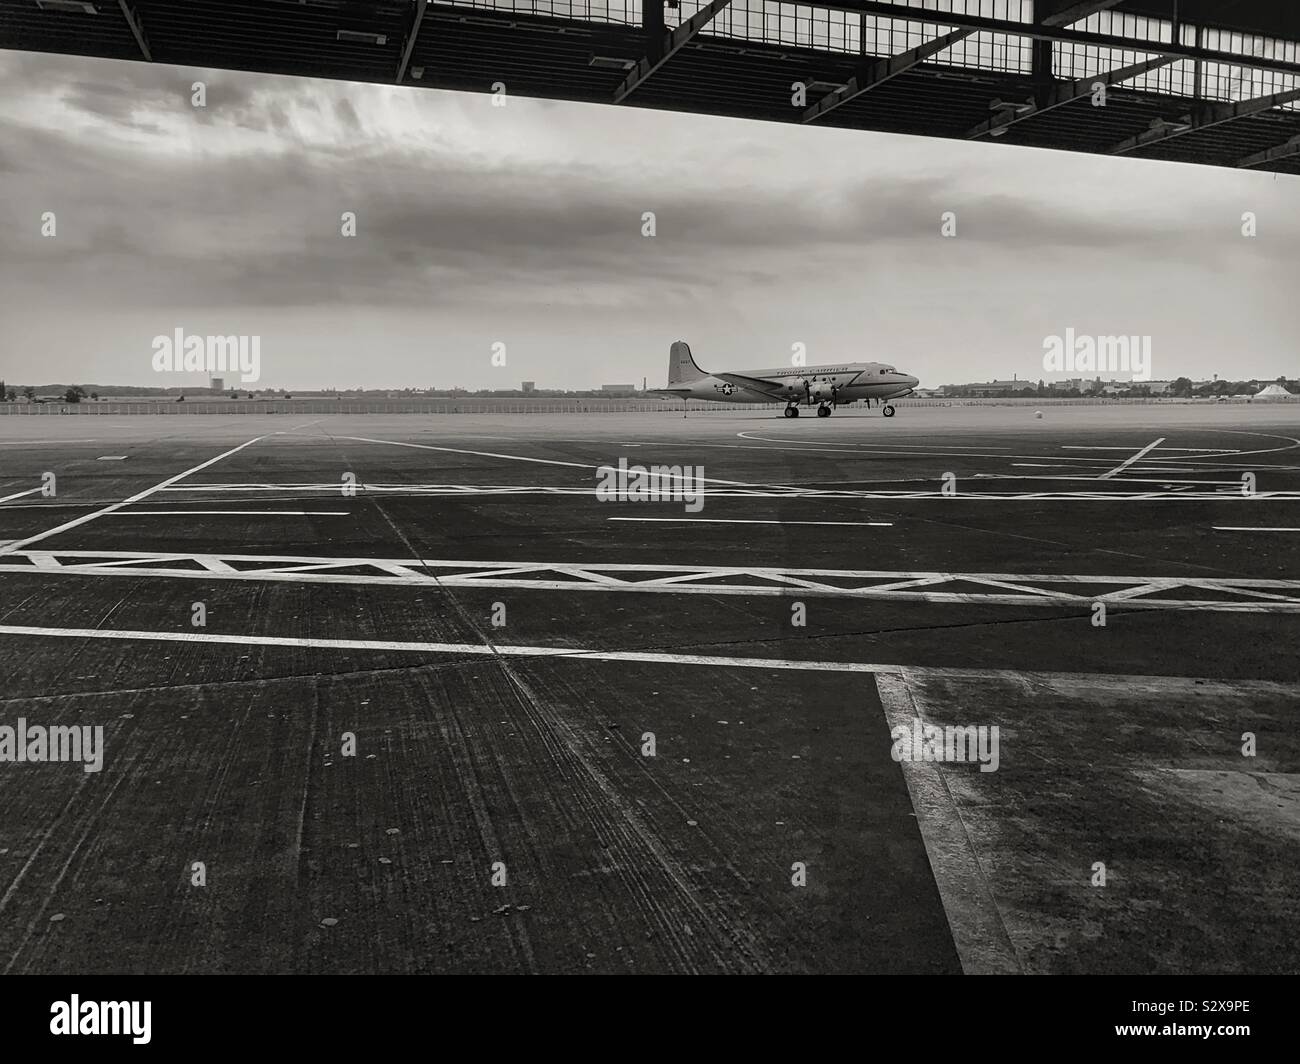 El aeropuerto de Tempelhof, en Berlín, Alemania. Viejo aeropuerto de Berlín estaba involucrada con el puente aéreo de Berlín. Elemento arquitectónico es el dosel que protegía el embarque a los pasajeros contra la intemperie. Foto de stock